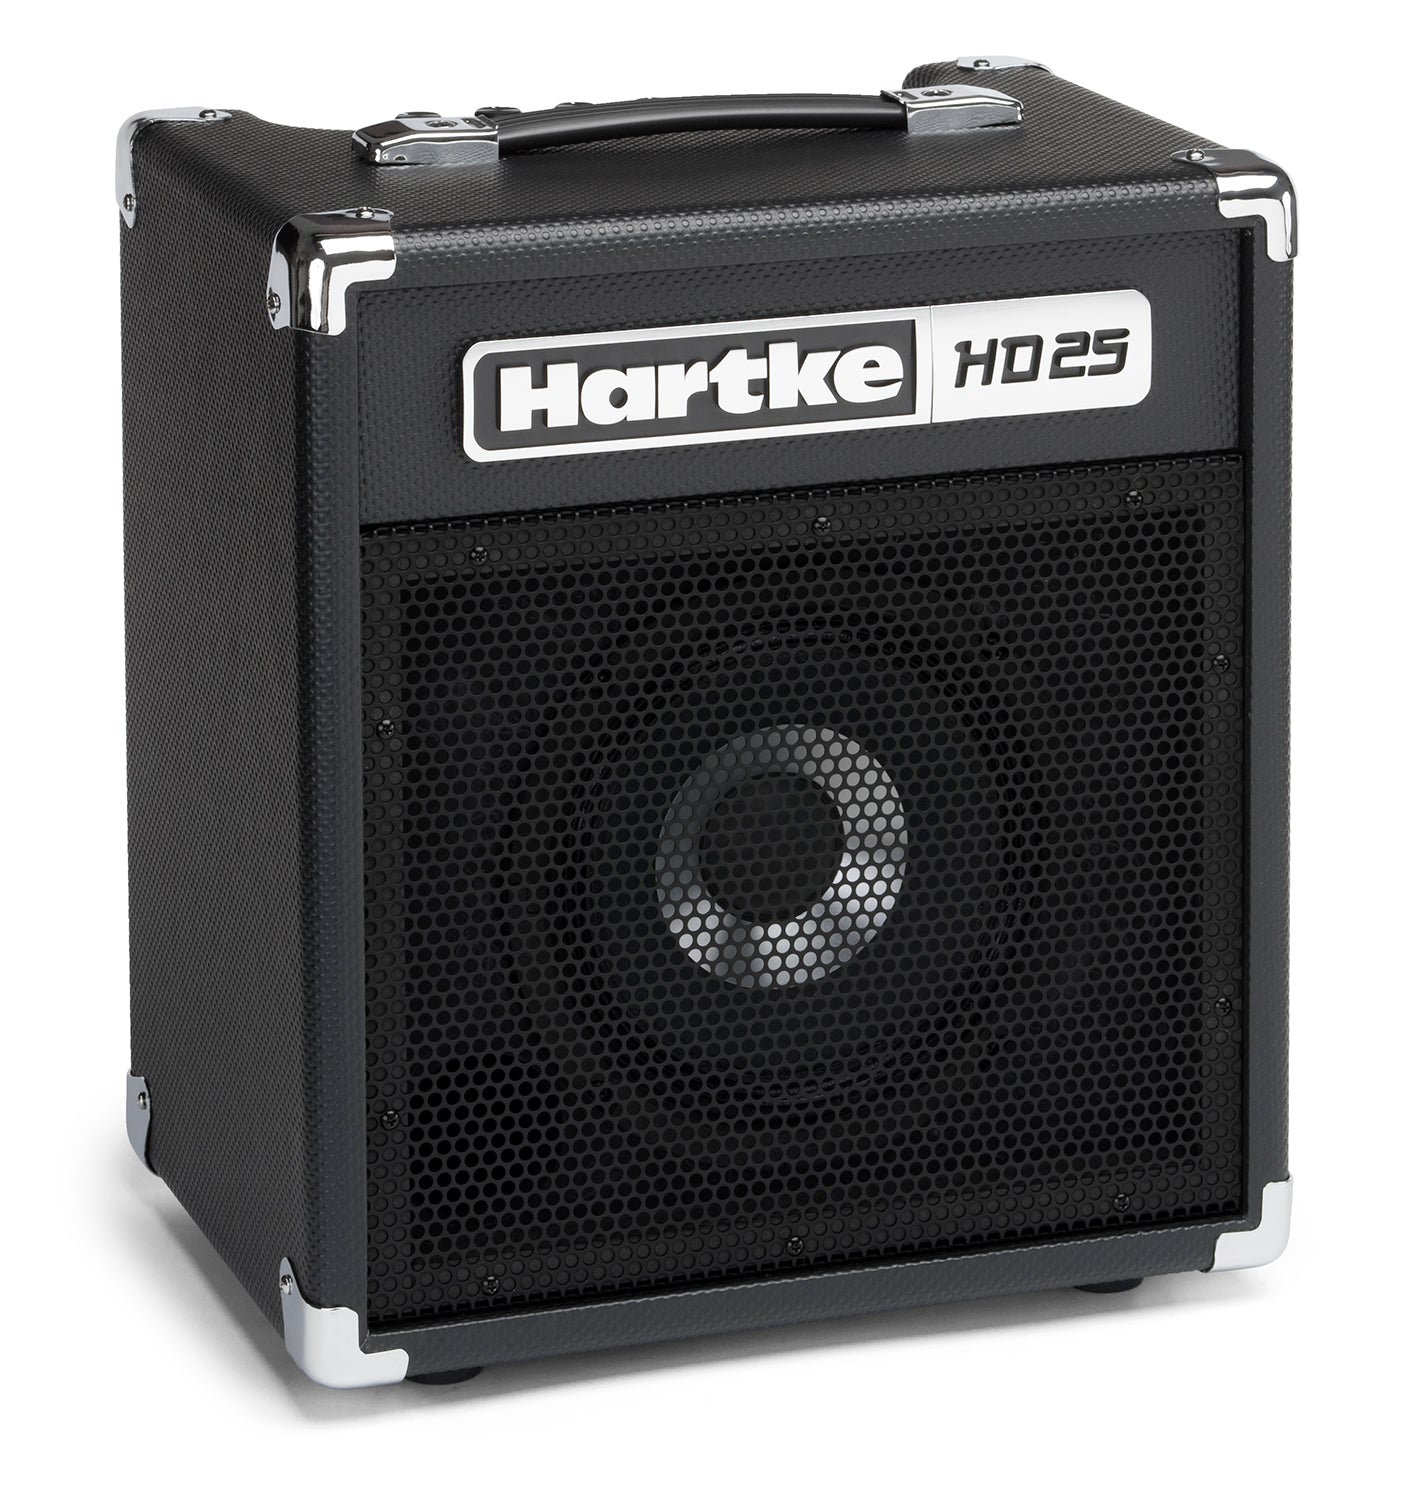 Hartke HD25 - 25 Watt Bass Combo Amp w/8" Driver